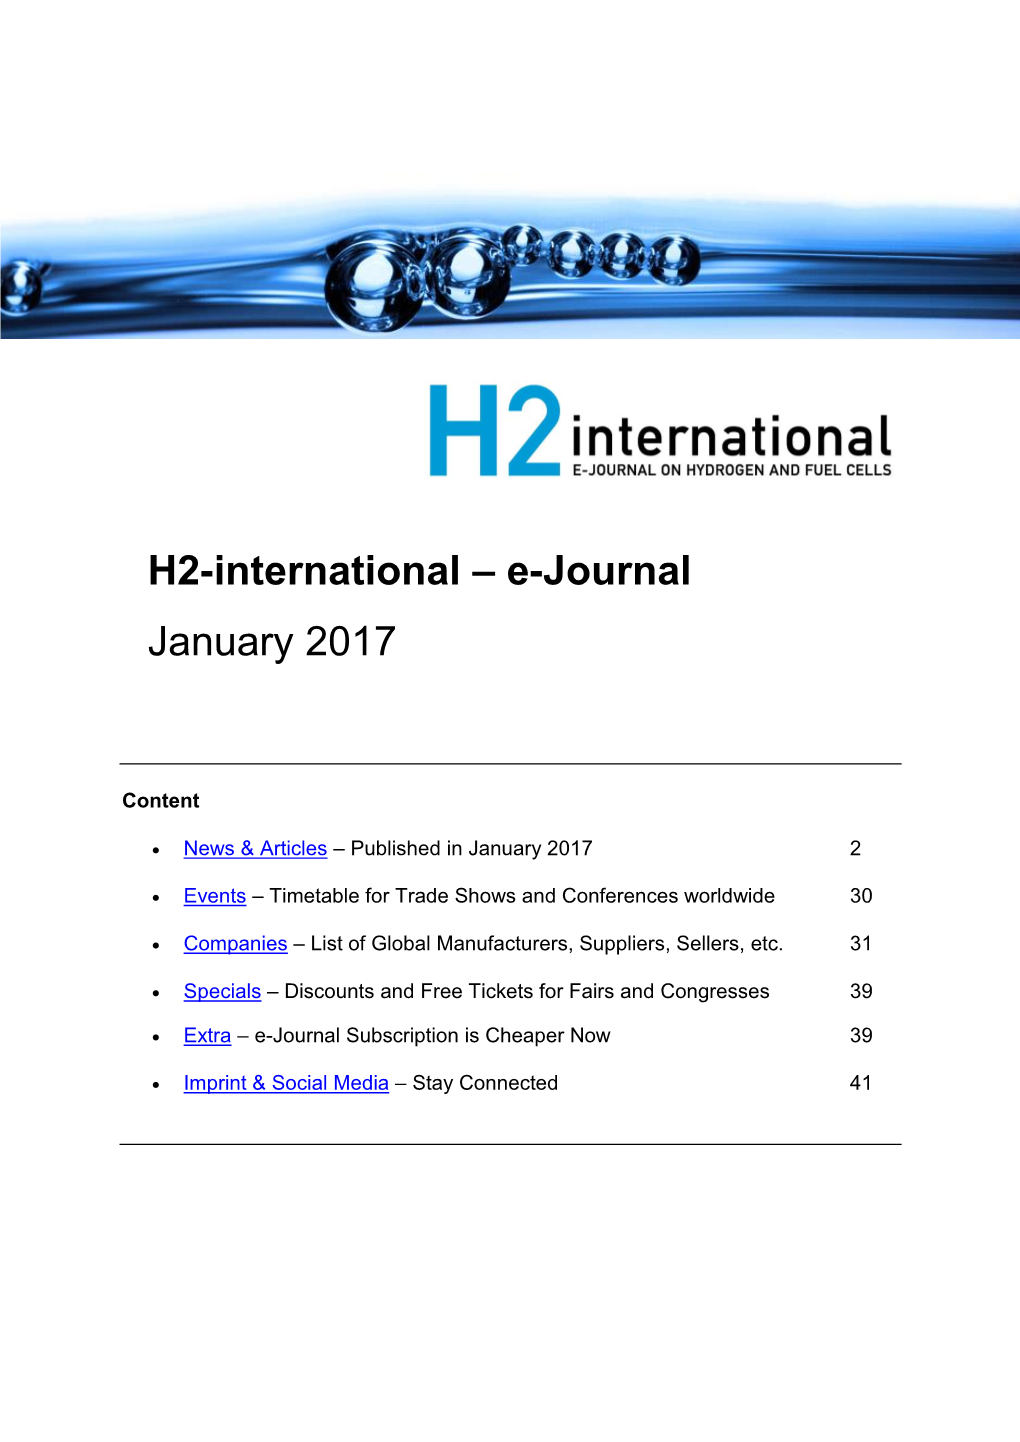 H2-International Januar 2017